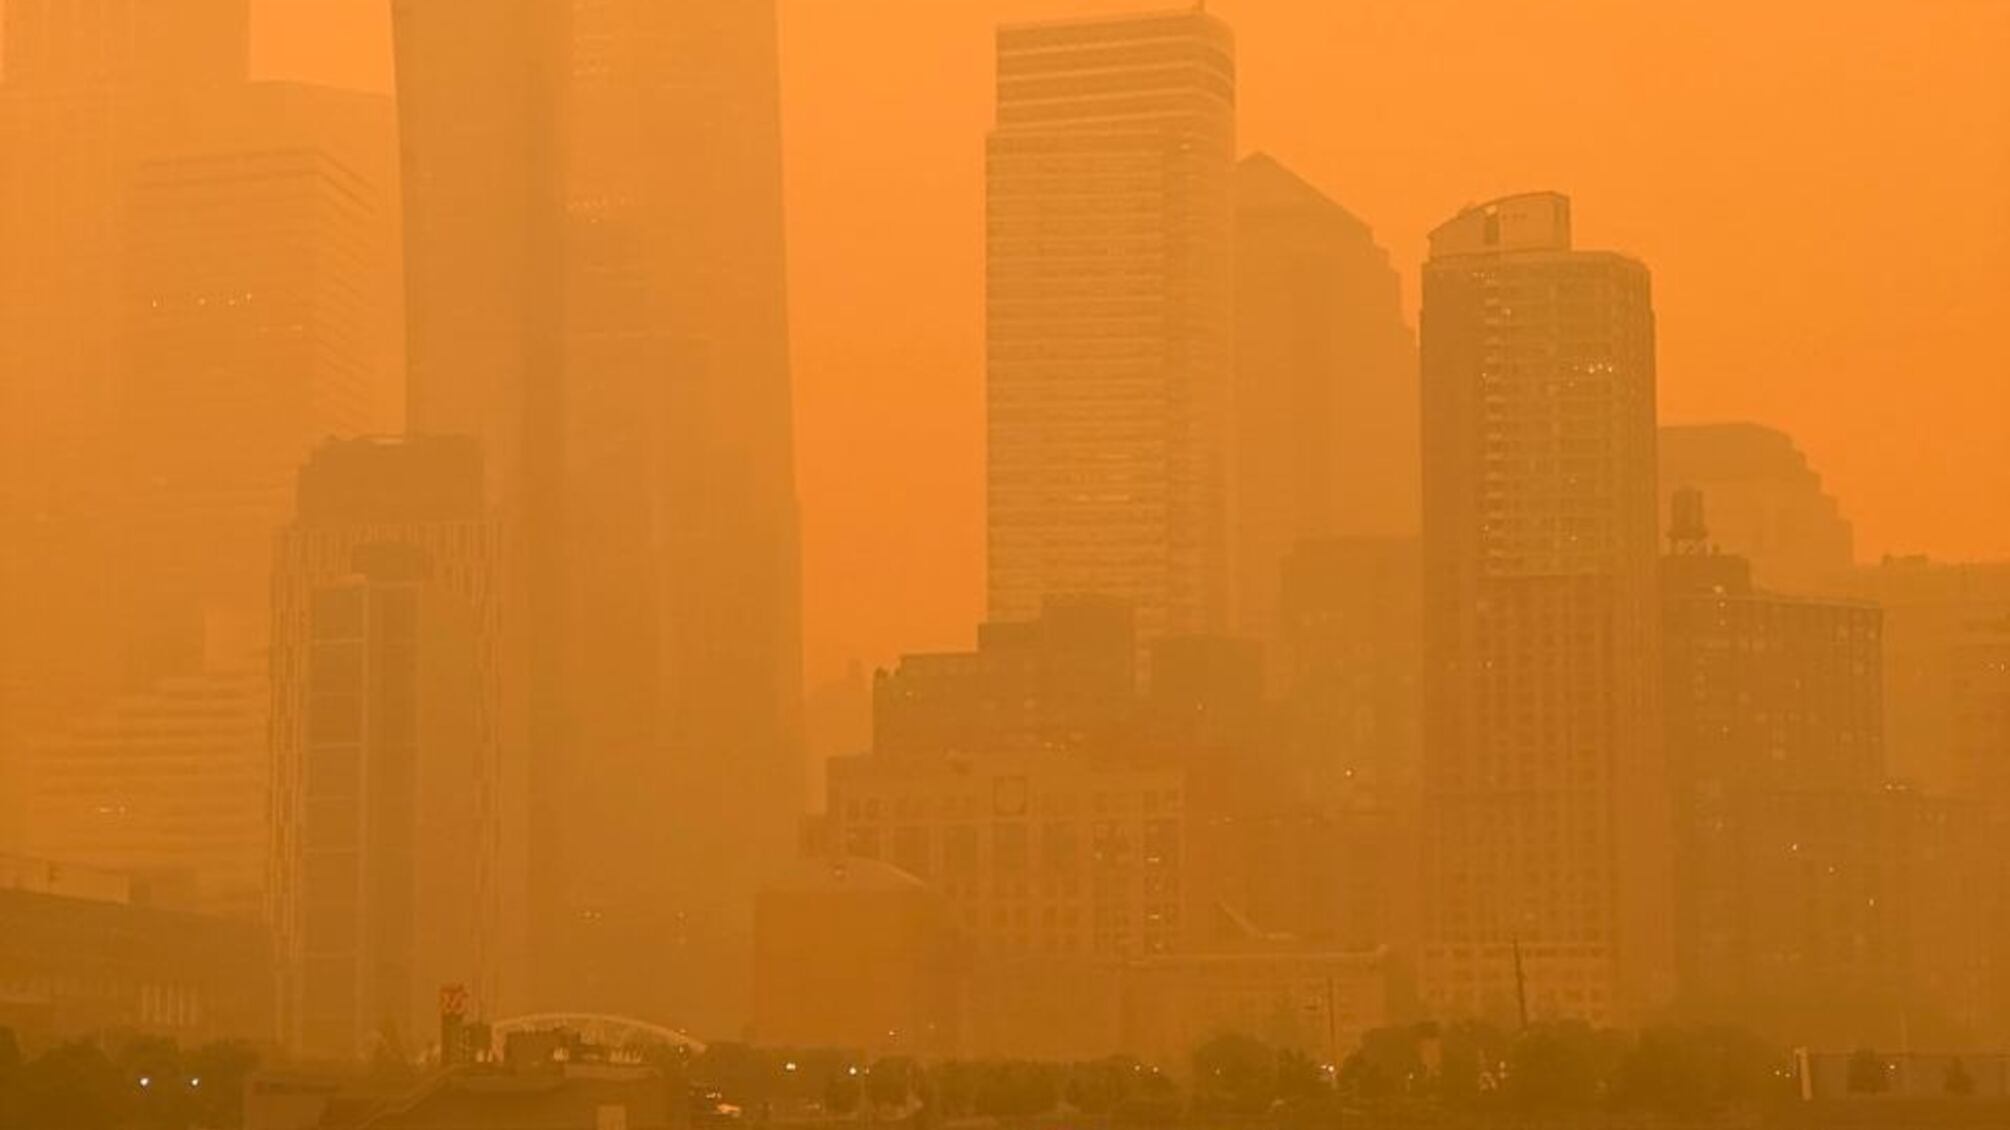 Последствия лесных пожаров в Канаде добрались до Нью-Йорка: город накрыл смогом (фото)